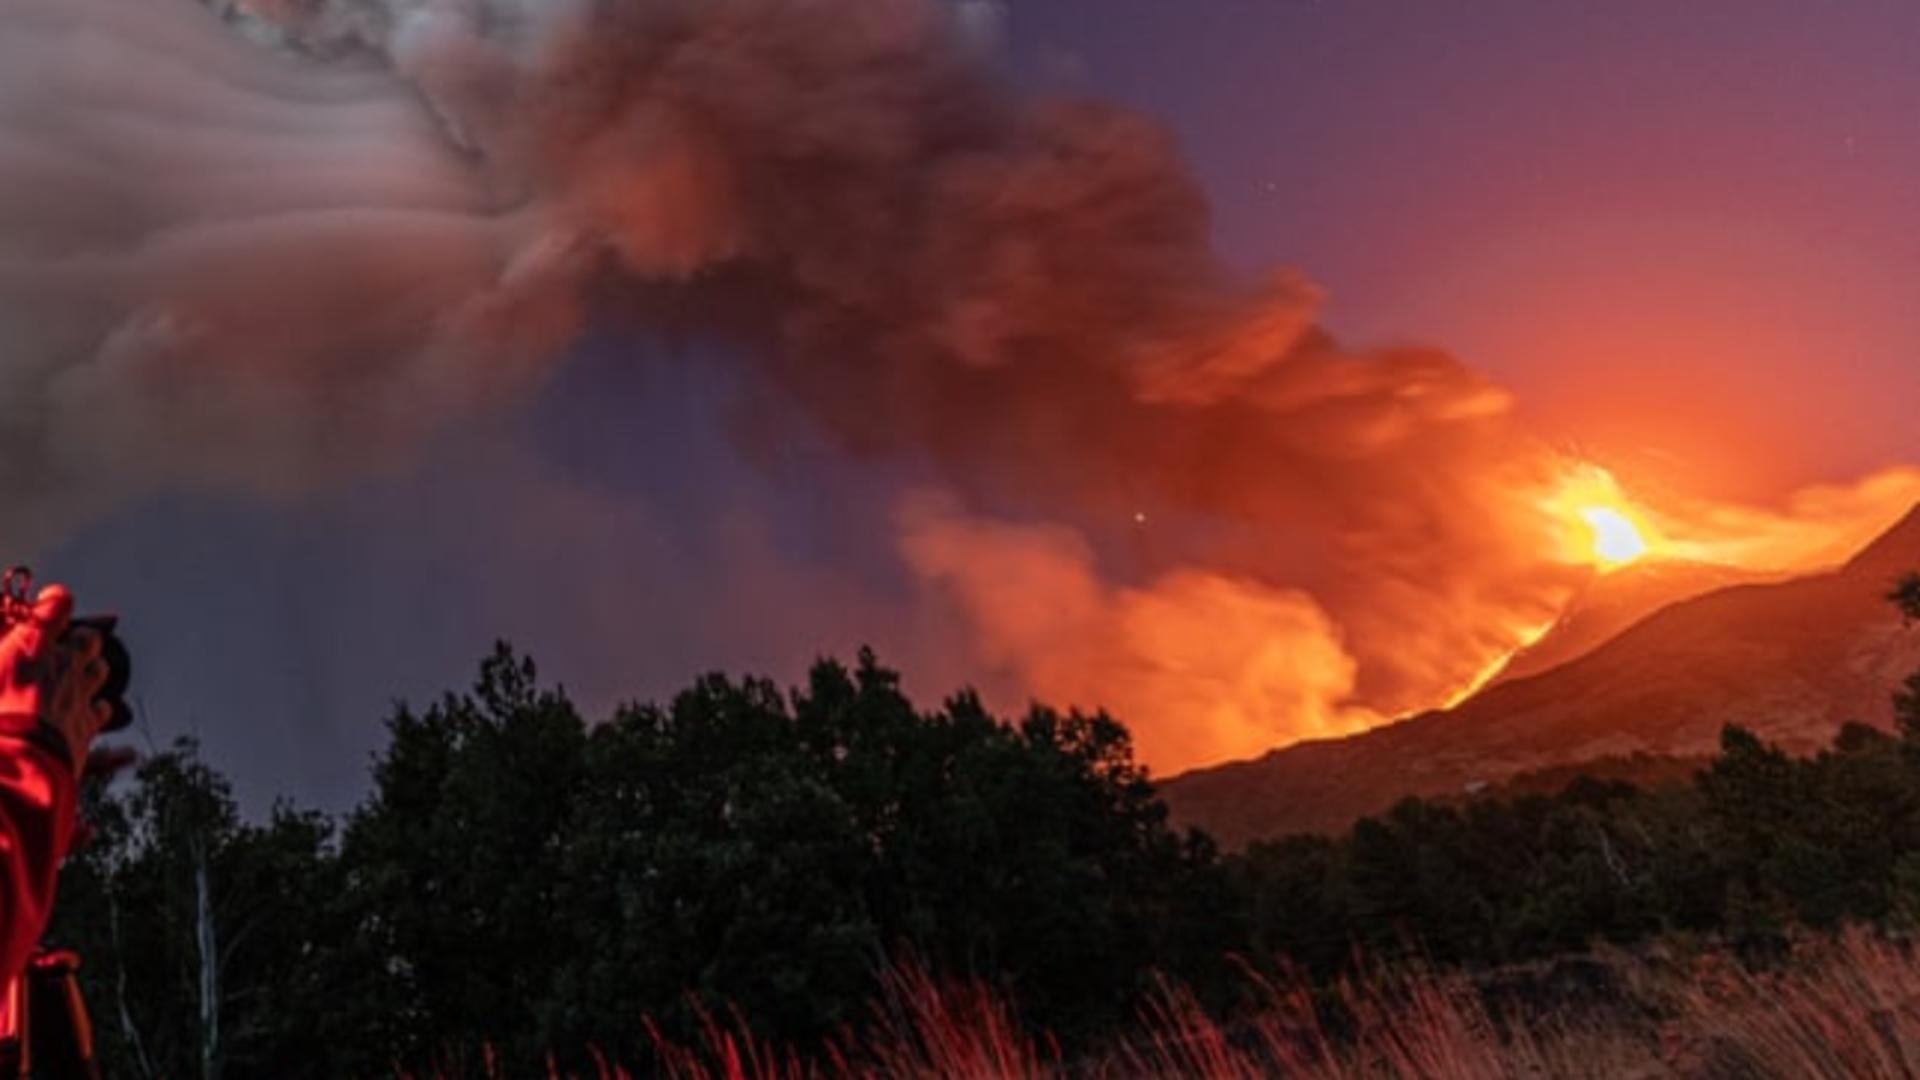 Erupția vulcanului Etna, Sicilia, pe 9 august 2021 Foto: Twitter.com